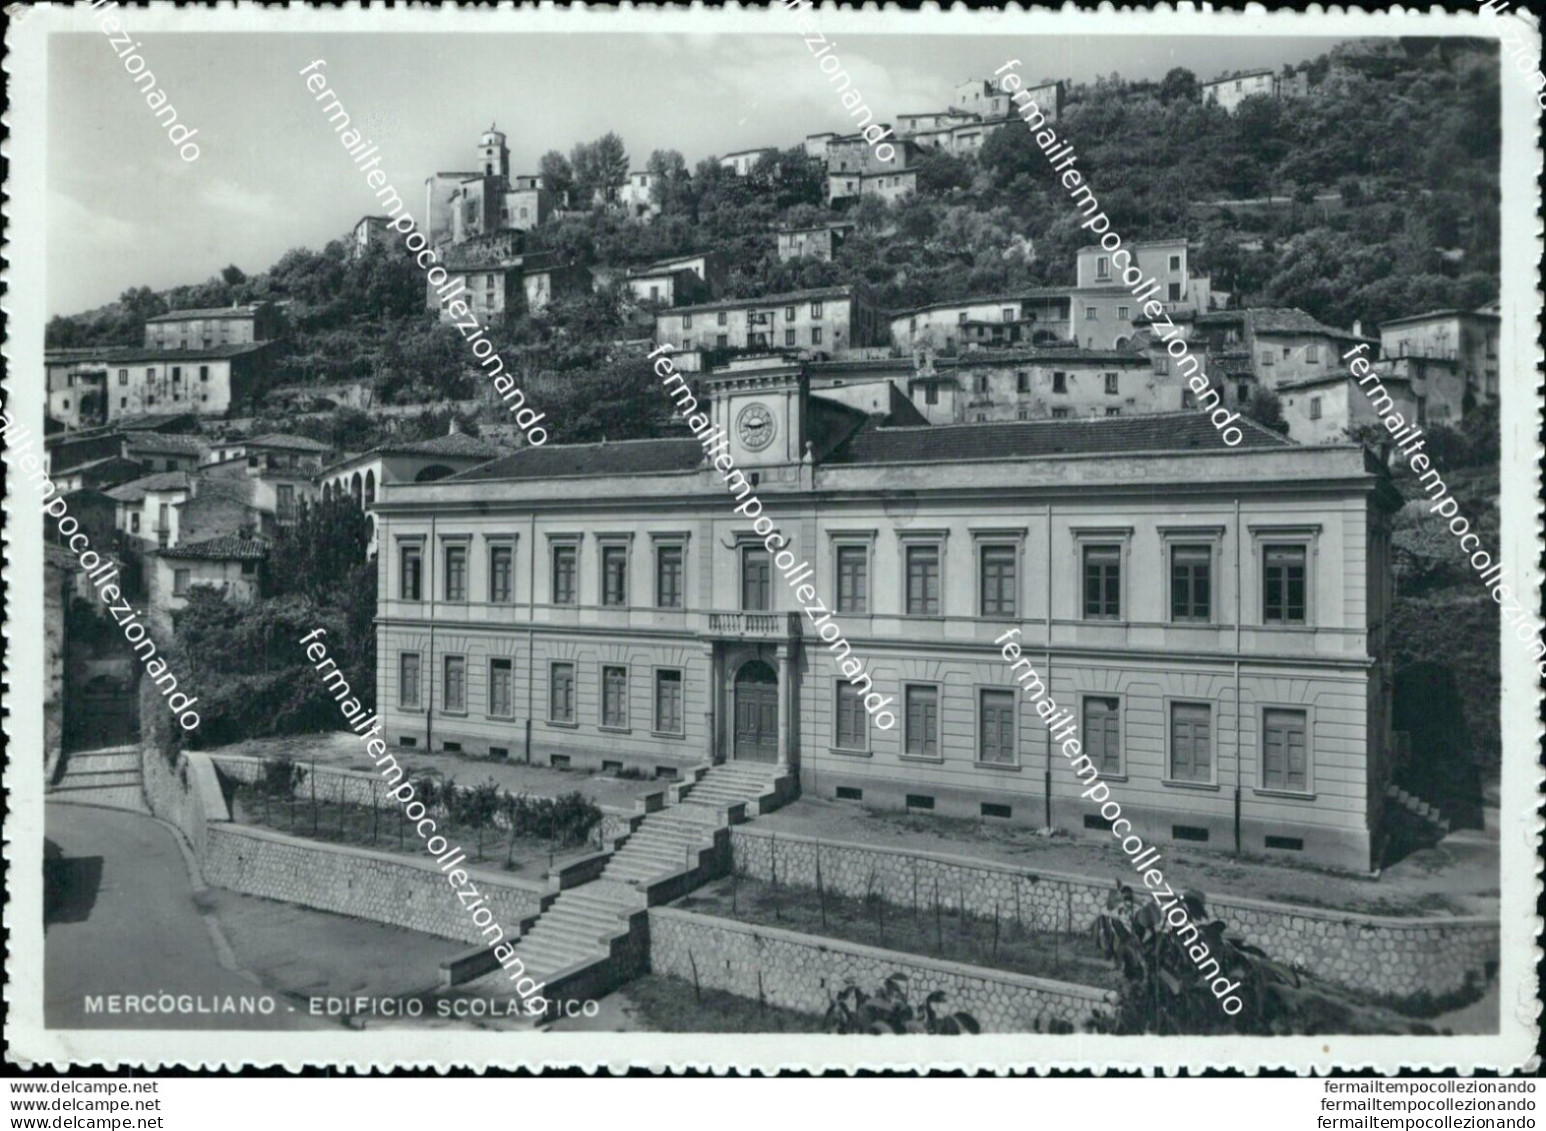 Bg557 Cartolina Mercogliano Edificio Scolastico Provincia Di Avellino - Avellino